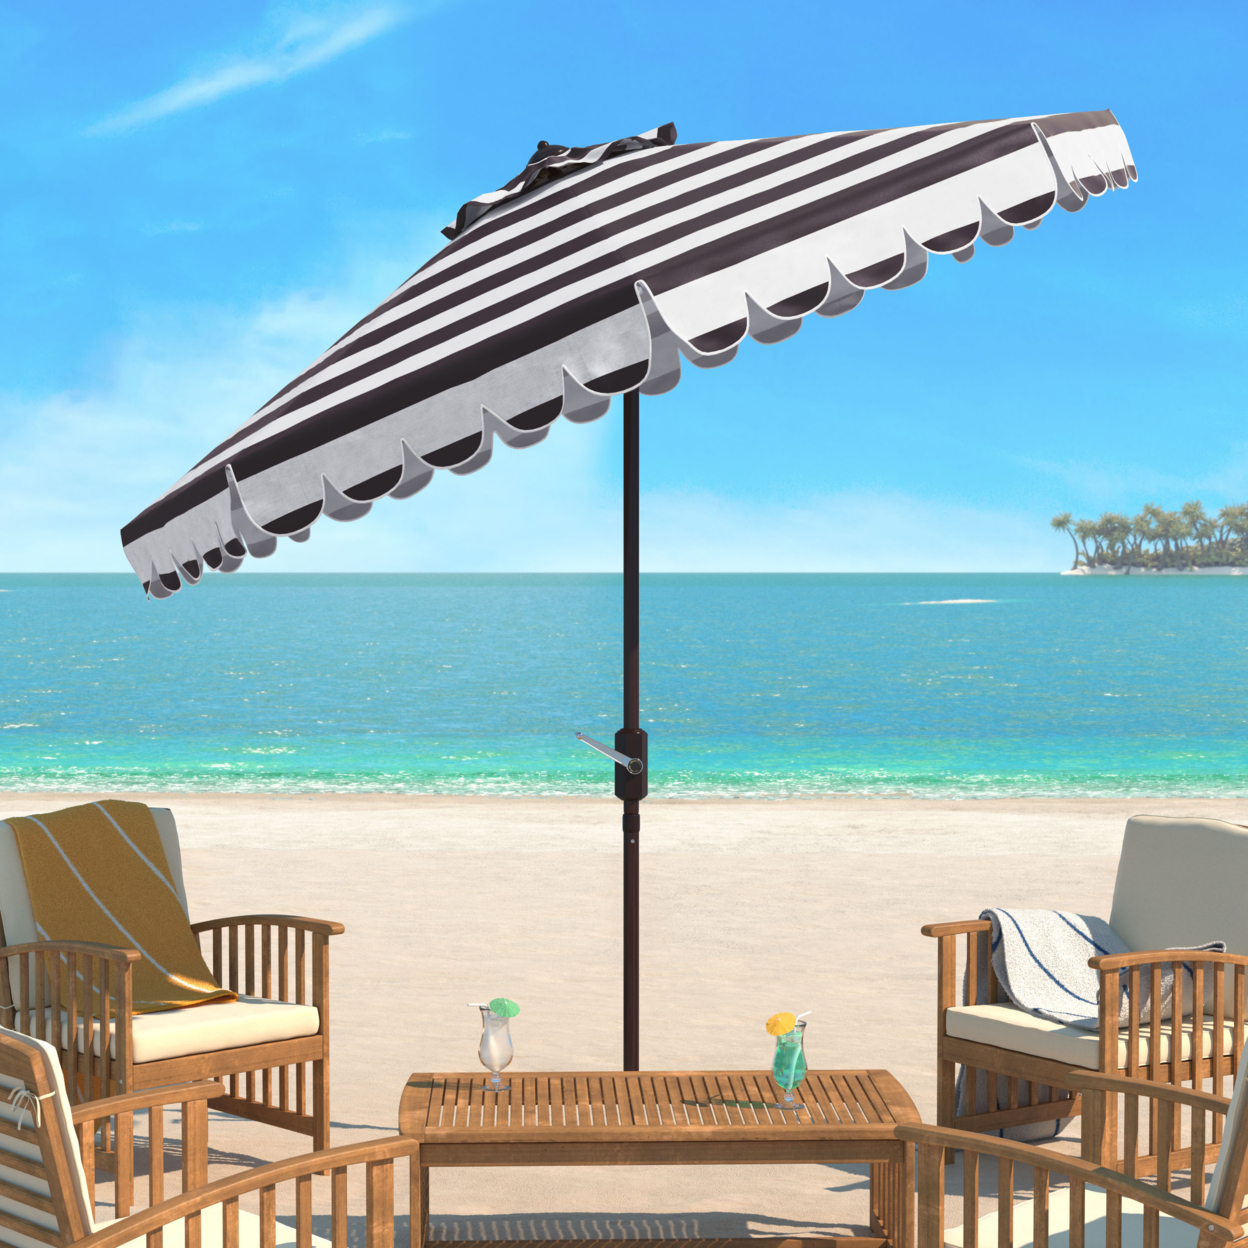 SAFAVIEH Outdoor Collection Maui Single Scallop 9-Foot Umbrella Black/White